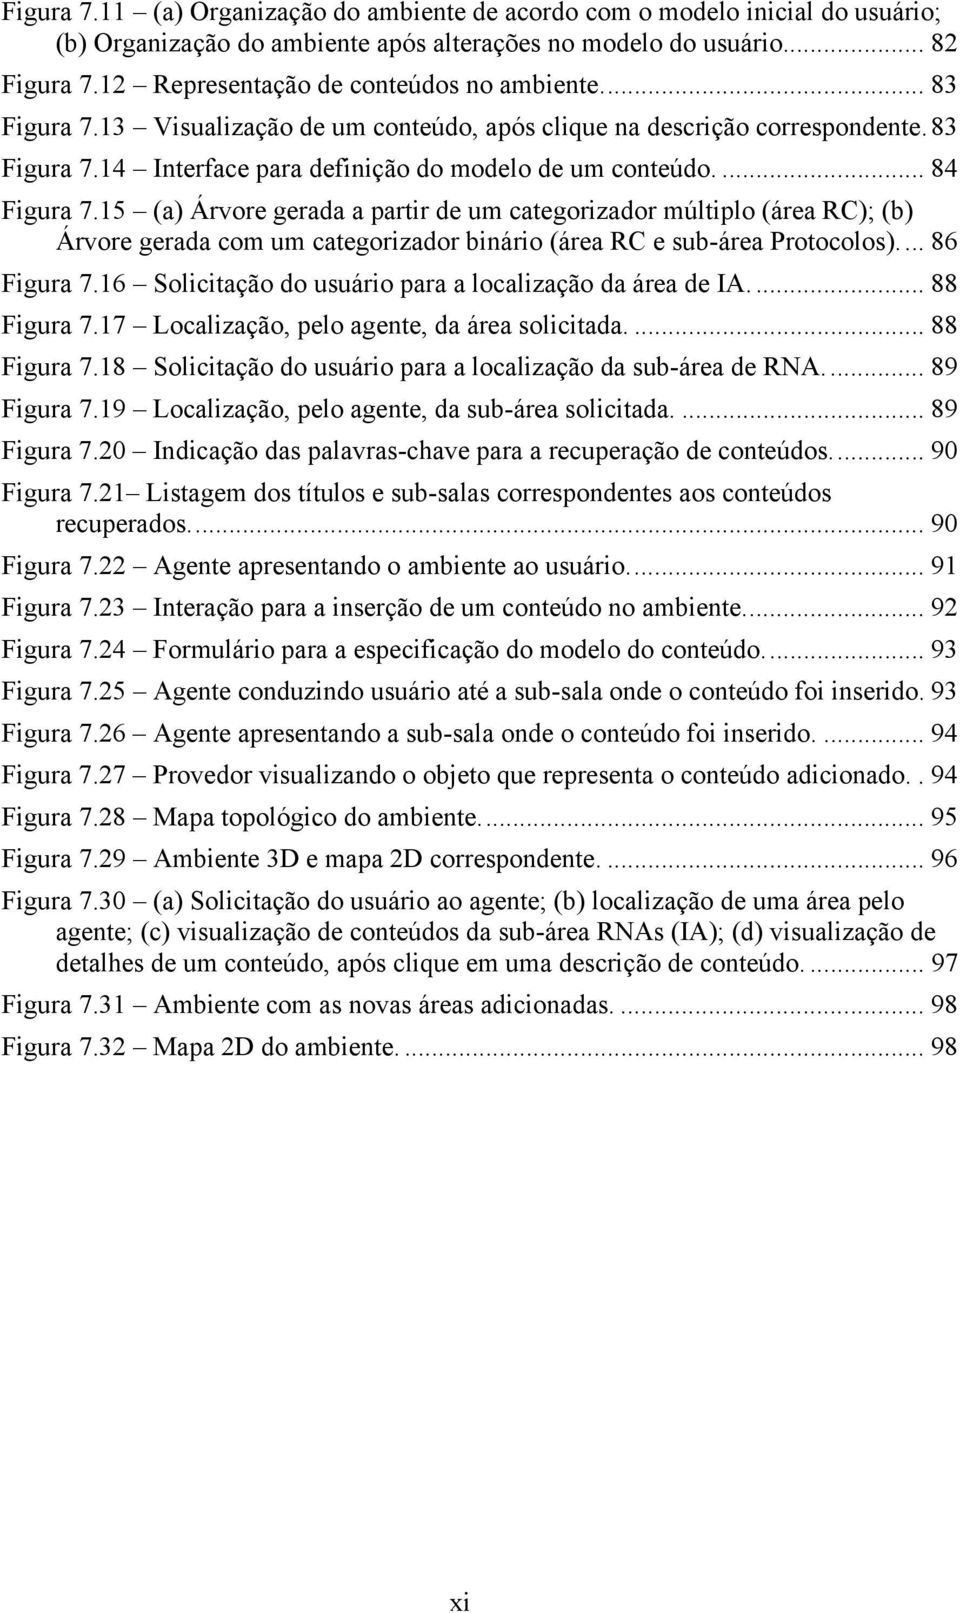 ... 84 Figura 7.15 (a) Árvore gerada a partir de um categorizador múltiplo (área RC); (b) Árvore gerada com um categorizador binário (área RC e sub-área Protocolos)... 86 Figura 7.